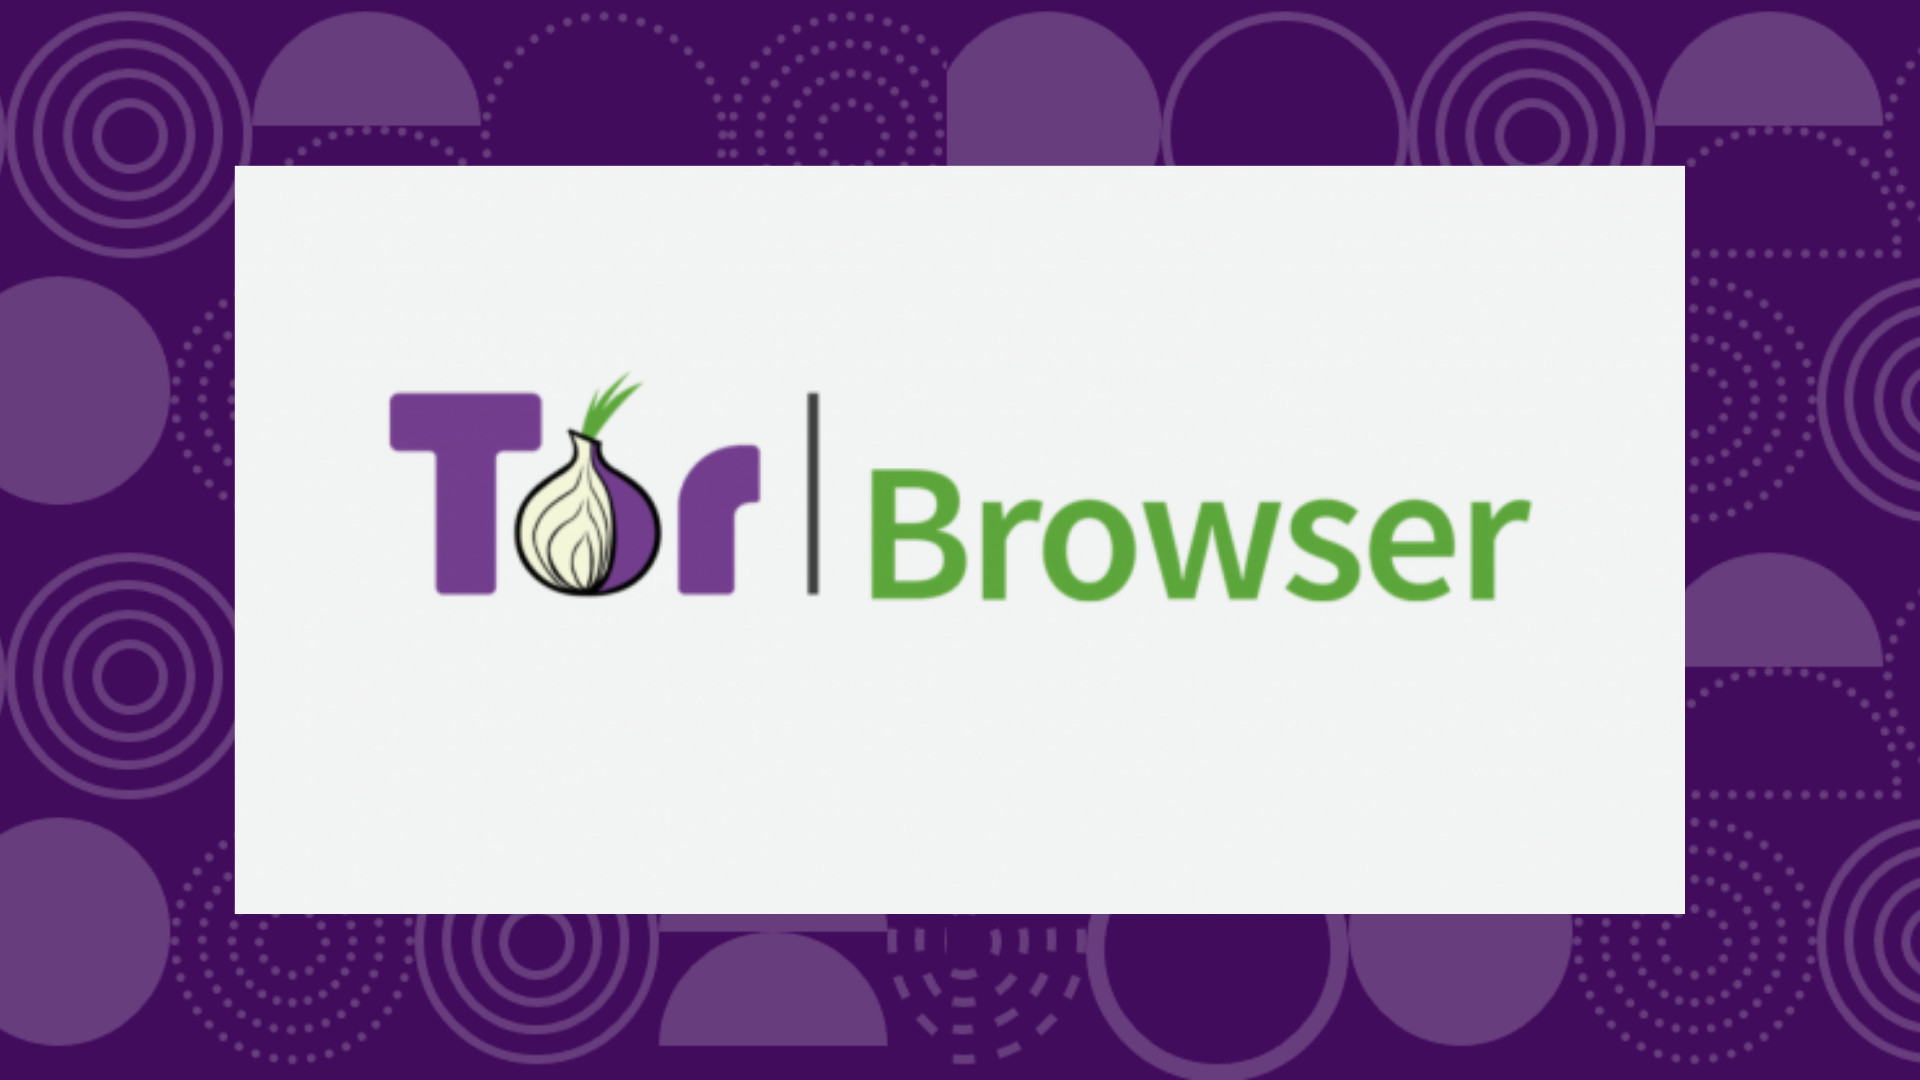 Tor browser плюсы и минусы hyrda вход интересные сайты в даркнет гидра